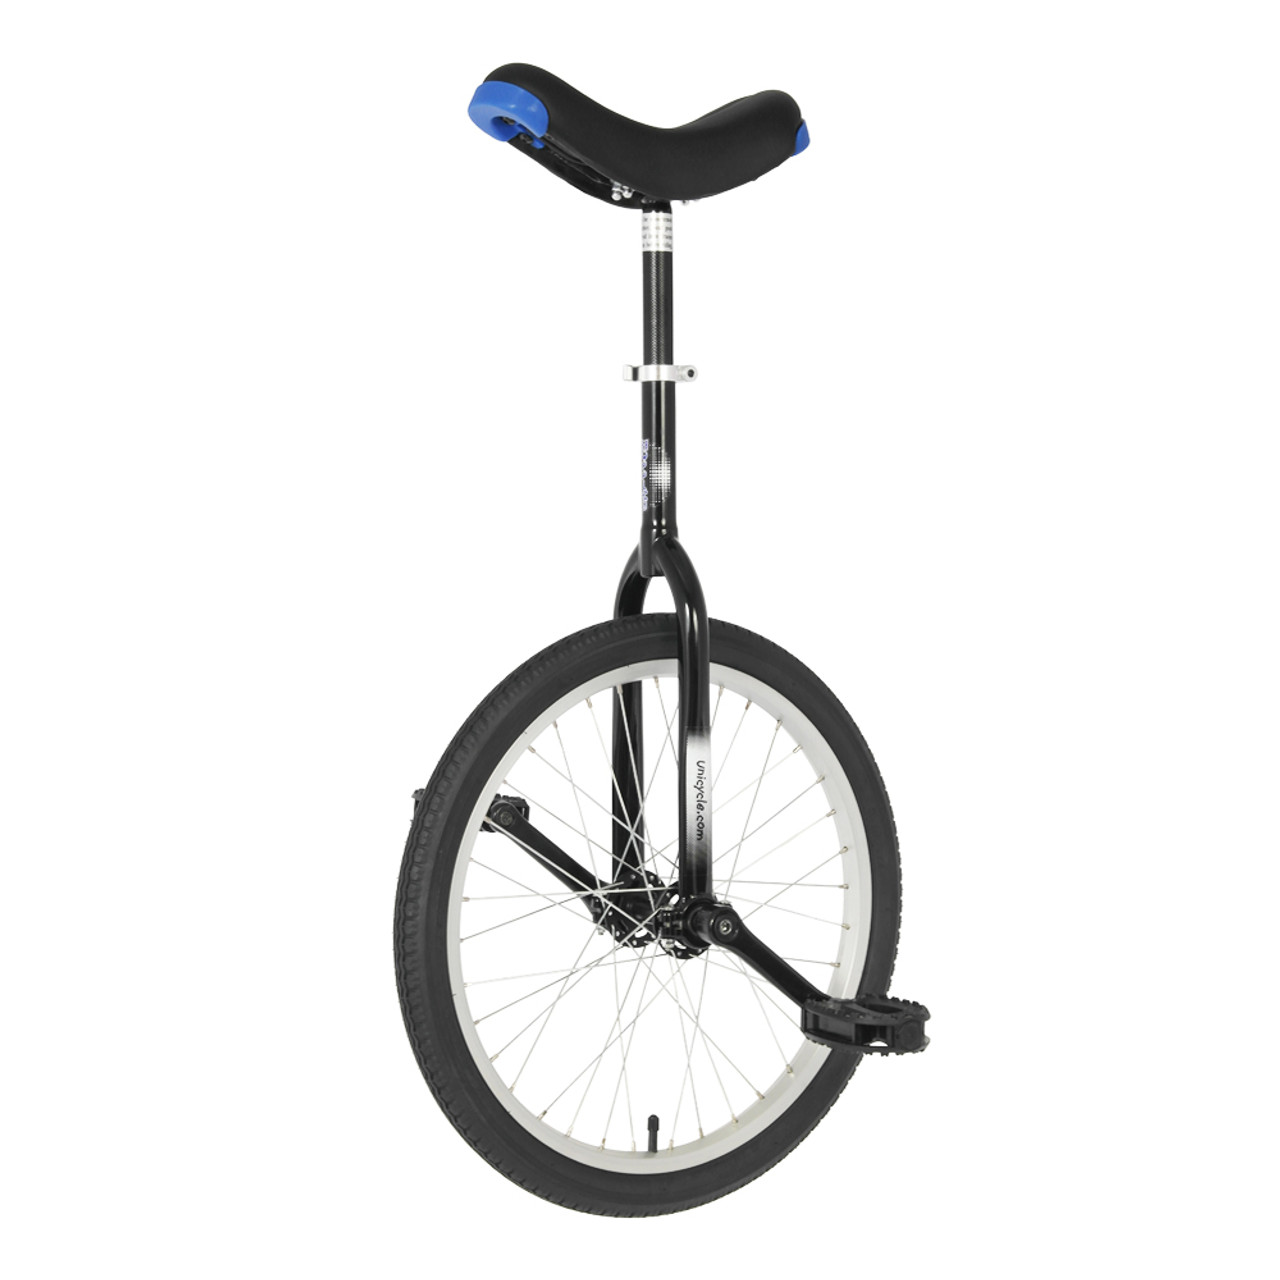 マウンテン ユニサイクル 一輪車 Nimbus Unicycle - 自転車本体